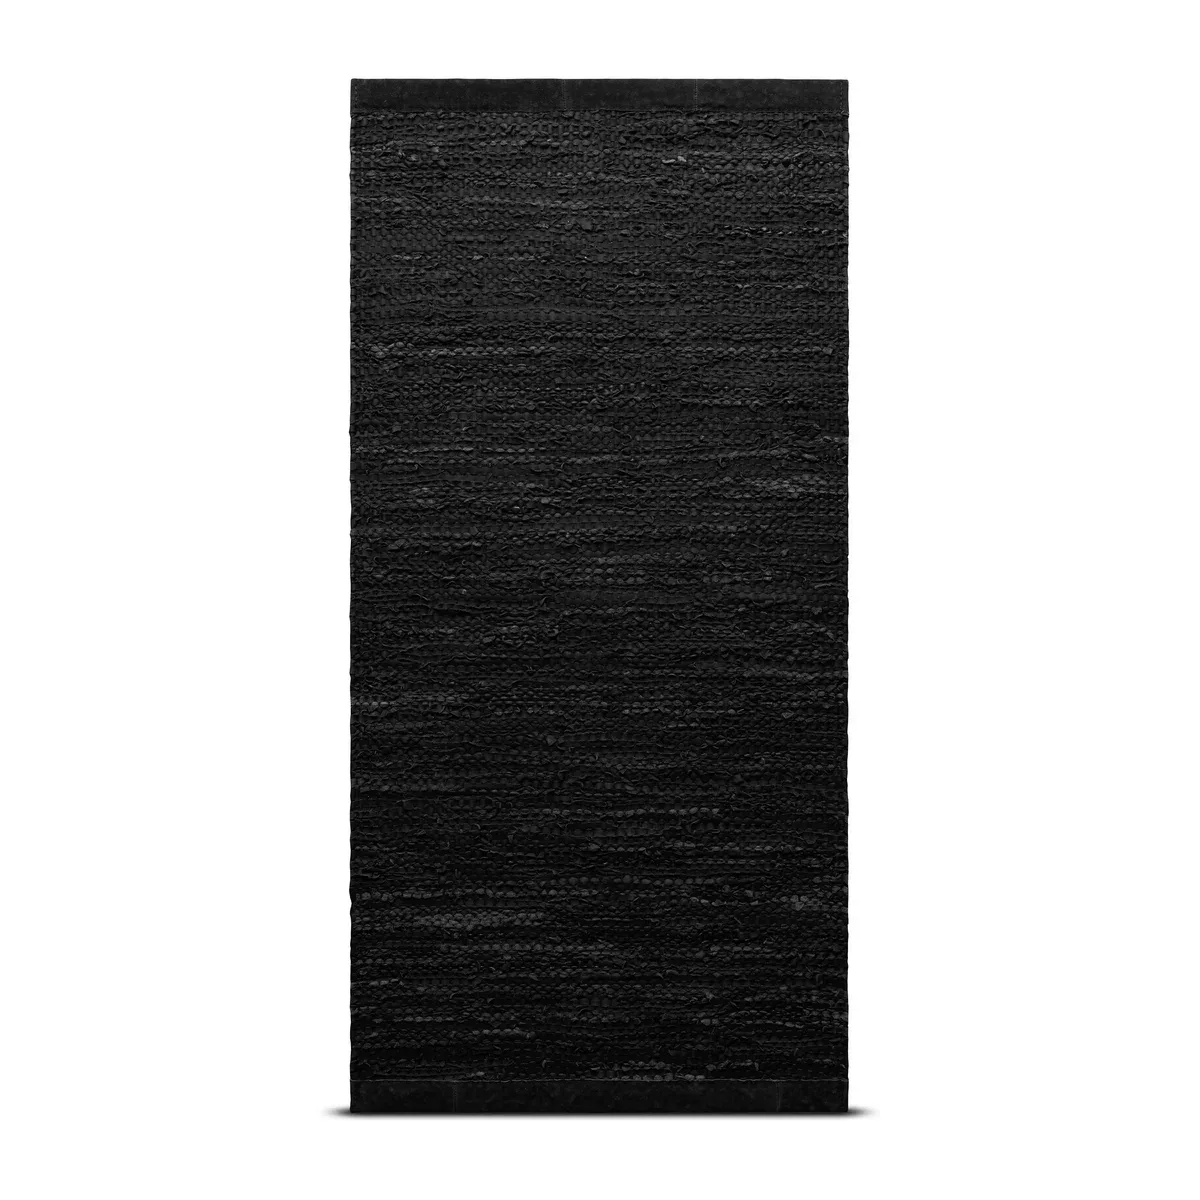 Leather Teppich 200 x 300cm black (schwarz) günstig online kaufen